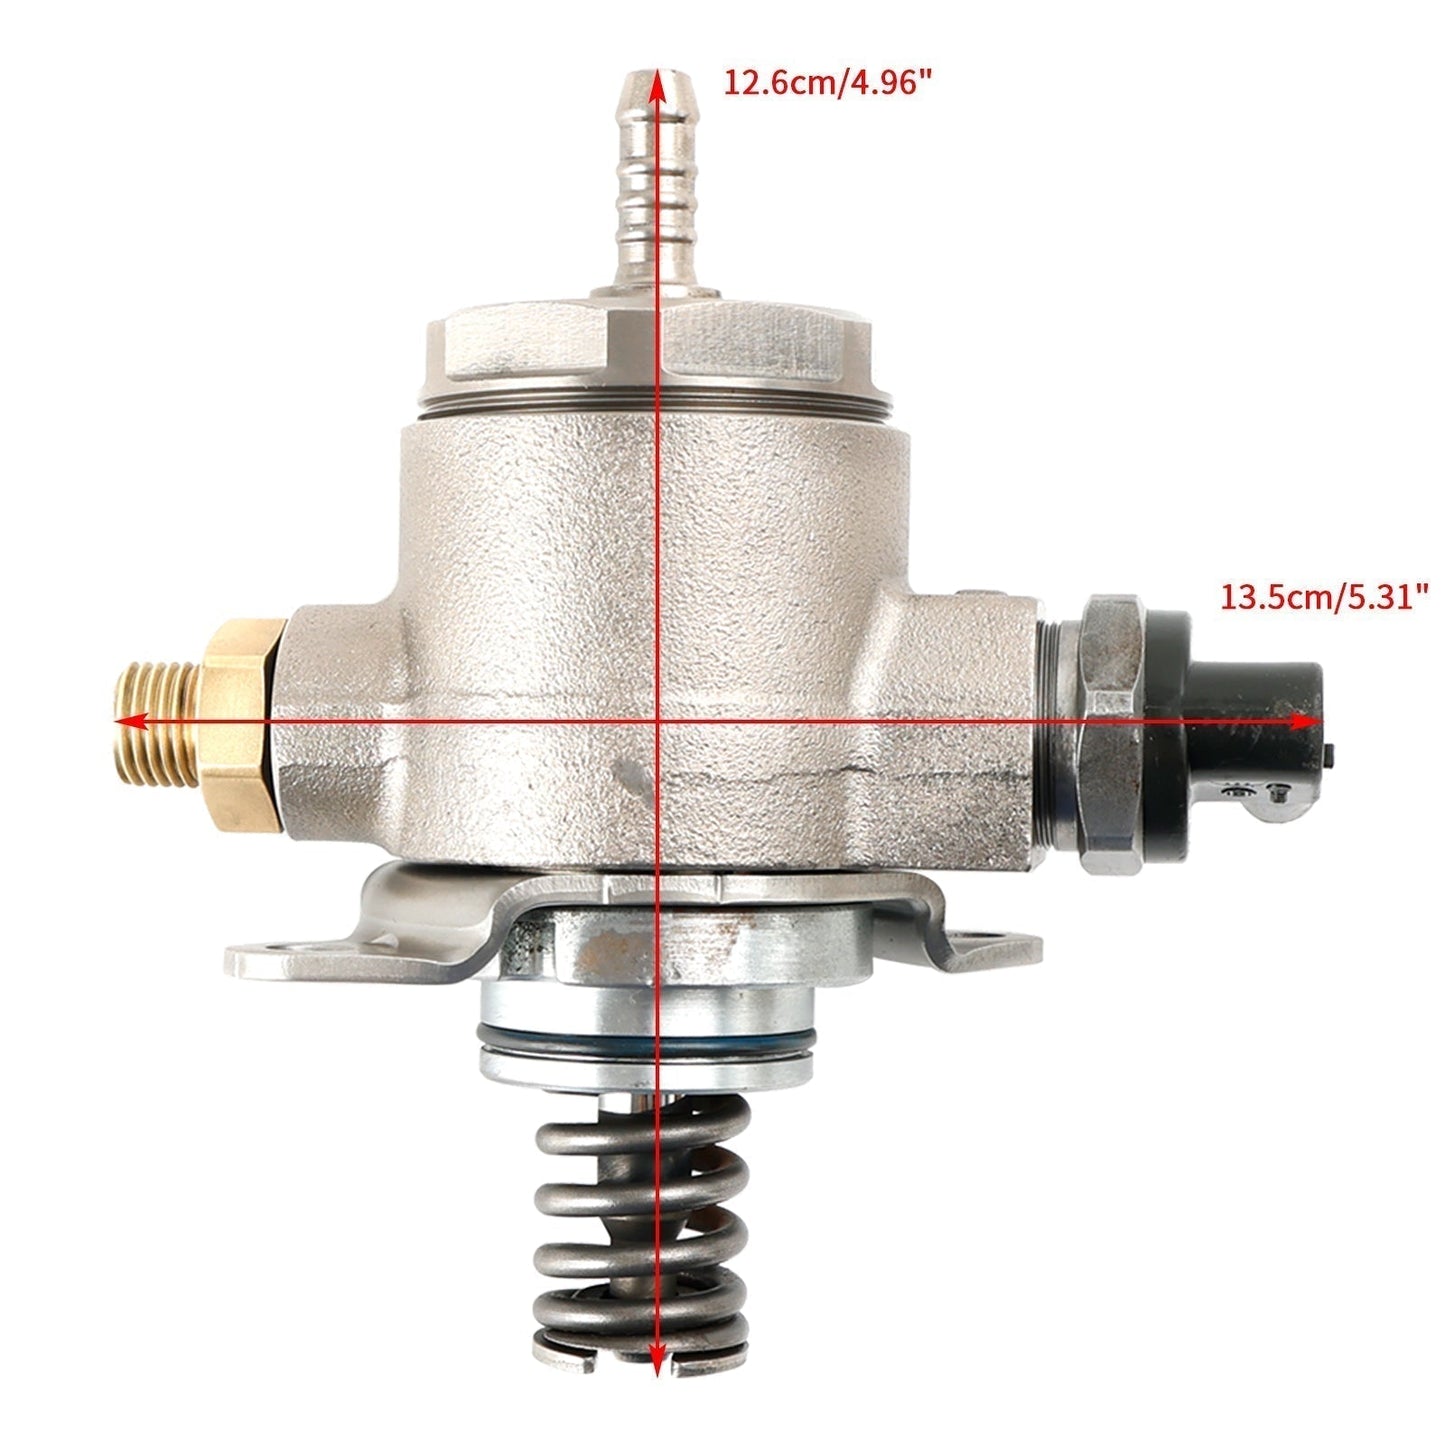 2011-2014 AUDI A6 (4G2, C7, 4GC) 2.0L High Pressure Pump Fuel Pump 06J127025E